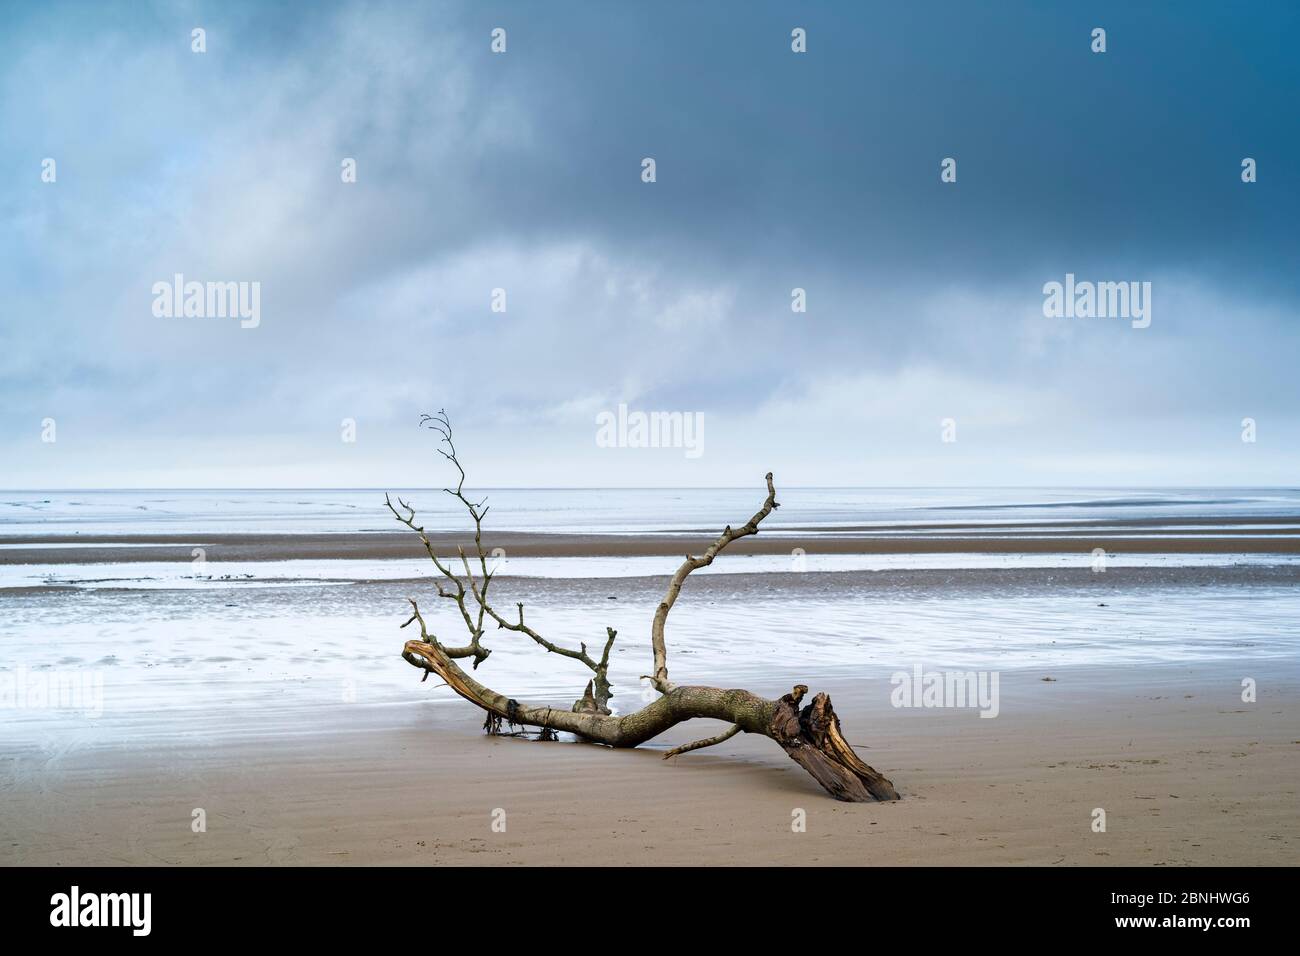 Driftwood - immagine grafica di ramo morto lavato dal mare del canale di Bristol sulla spiaggia sabbiosa di Burnham-on-Sea, Somerset, Regno Unito Foto Stock